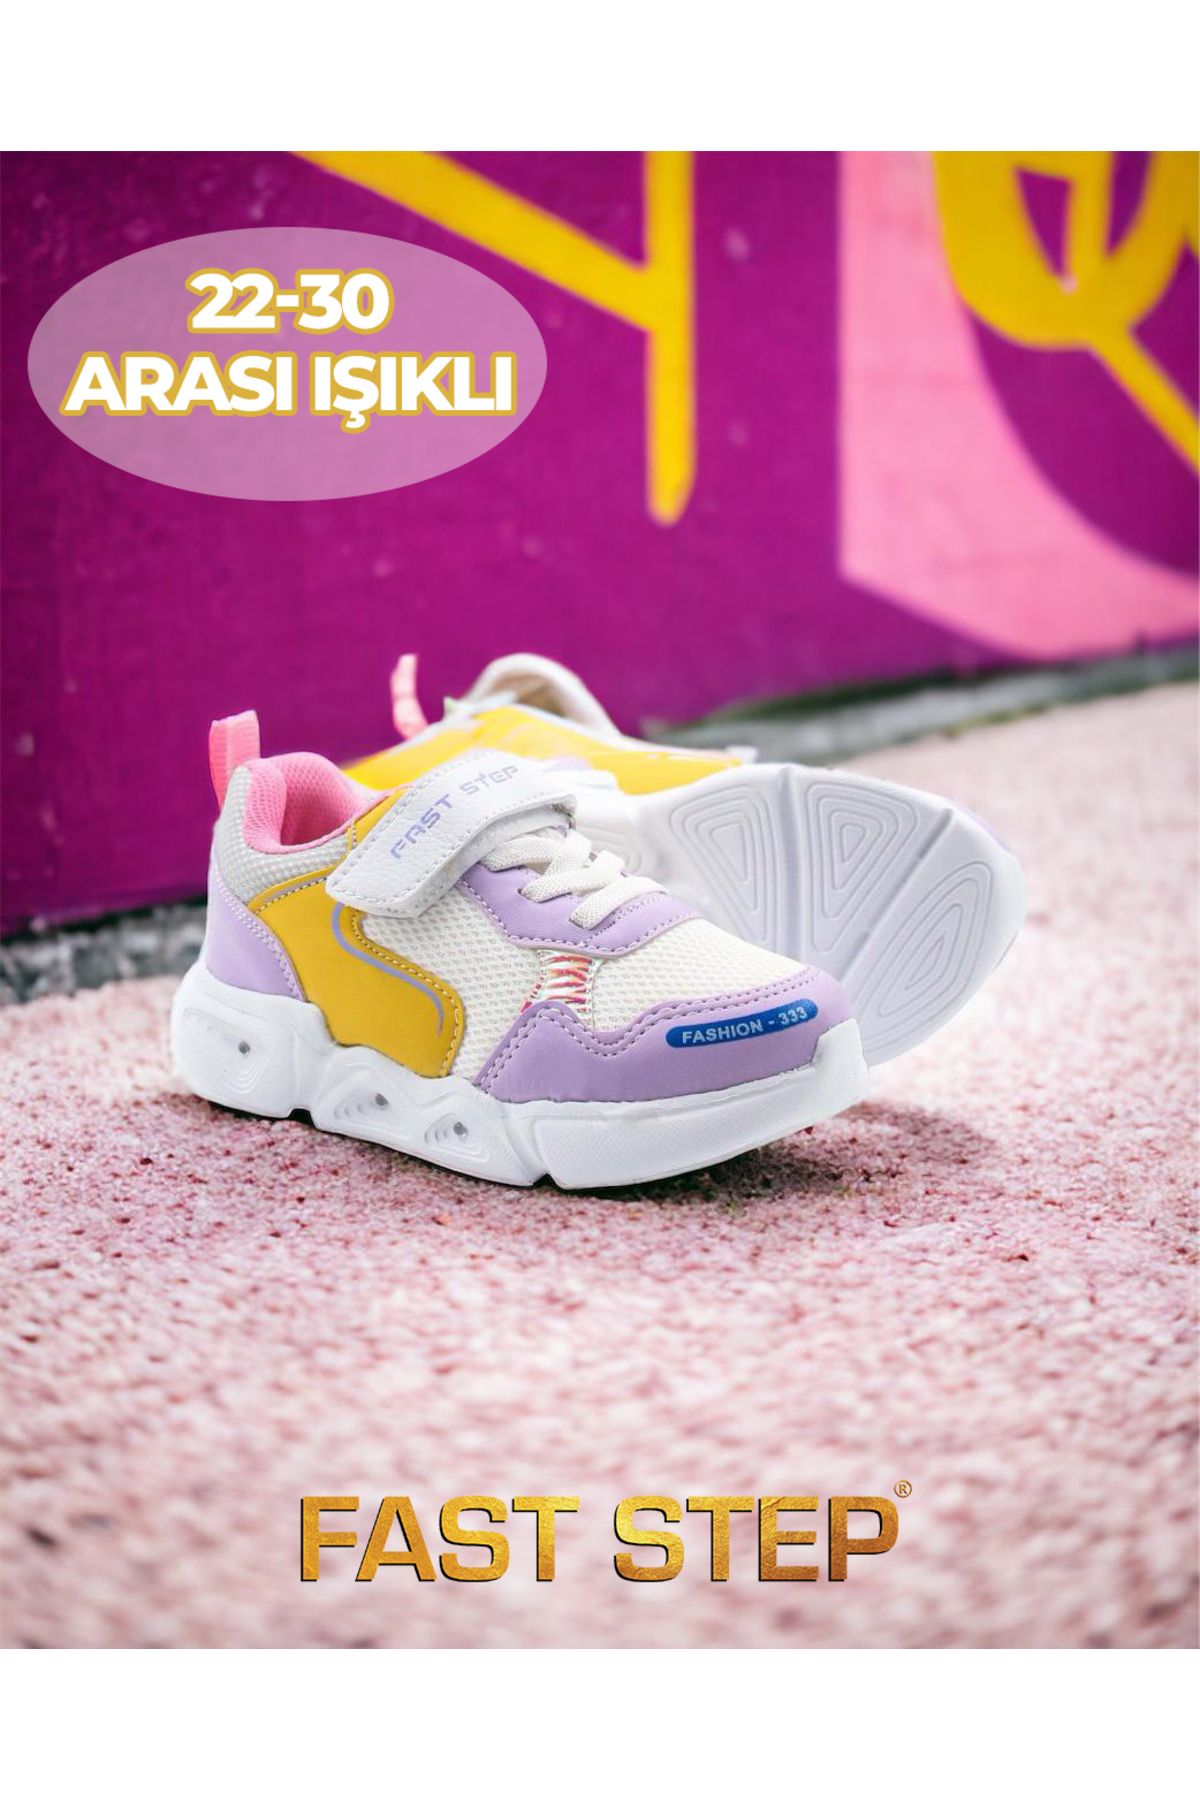 Fast Step Unisex Spor Rahat Taban Hafif Sneaker Cırt Cırtlı Yazlık Bebek Ve Çocuk Ayakkabısı 141xca018